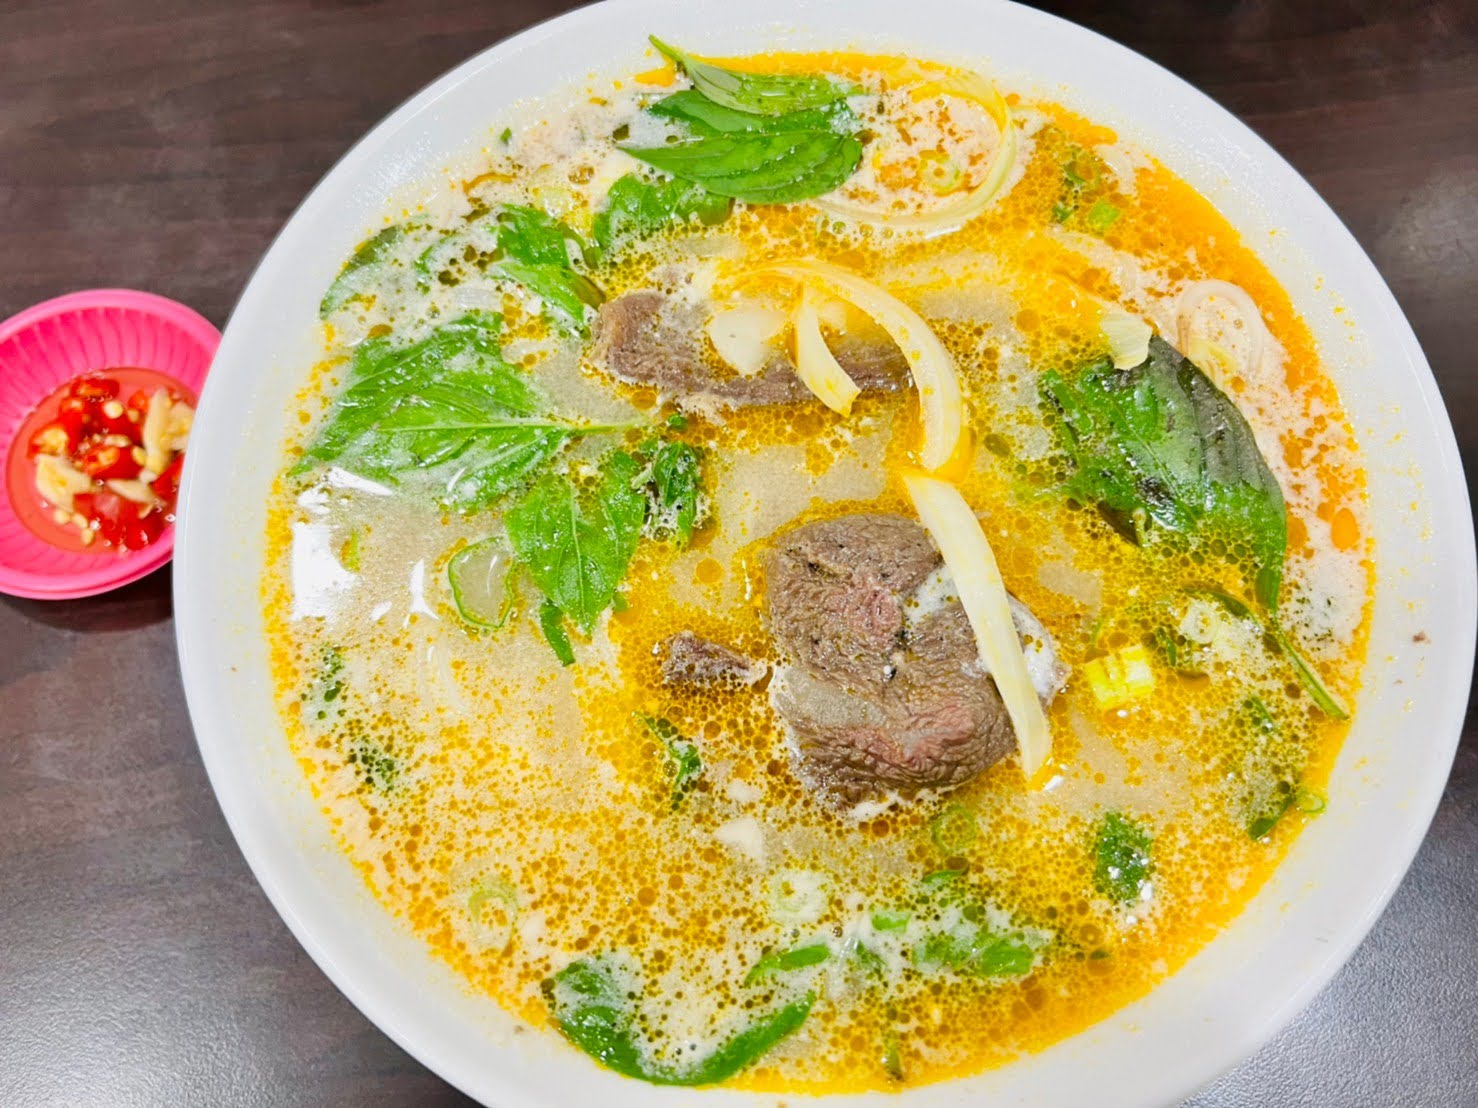 苗栗美食 西貢牛肉料理 竹南市場裡的越南料理 牛肉湯 河粉 炸春捲 涼拌沙拉